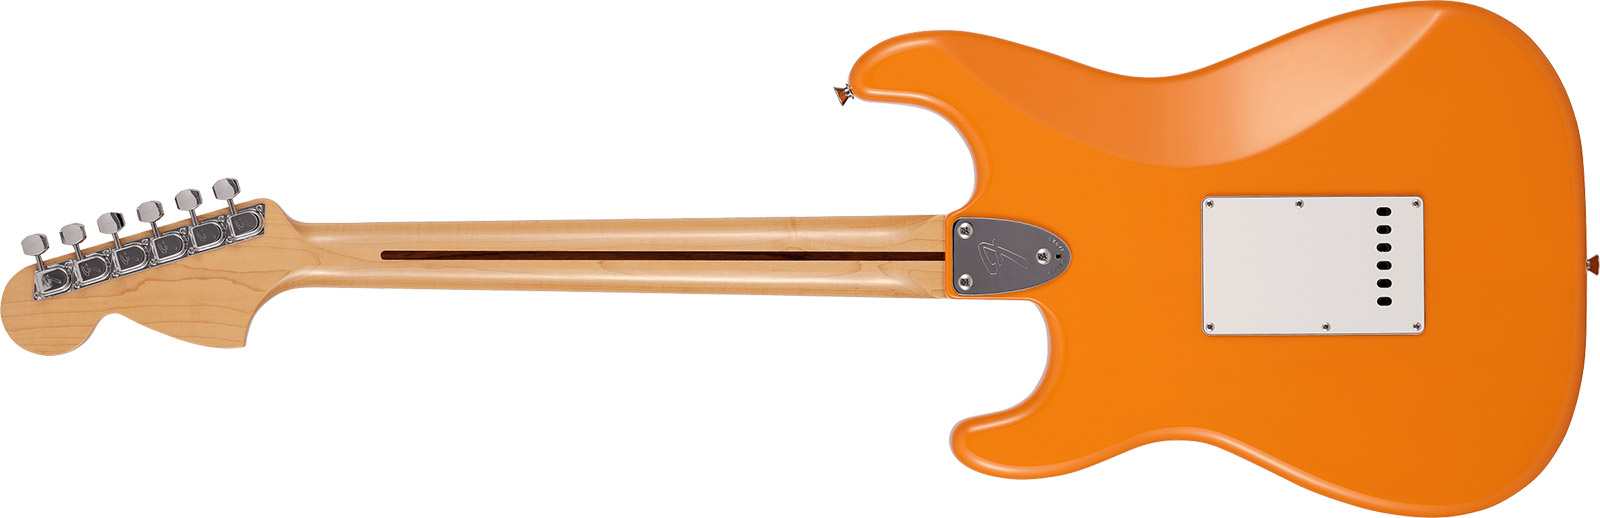 Fender Strat International Color Ltd Jap 3s Trem Rw - Capri Orange - Str shape electric guitar - Variation 1